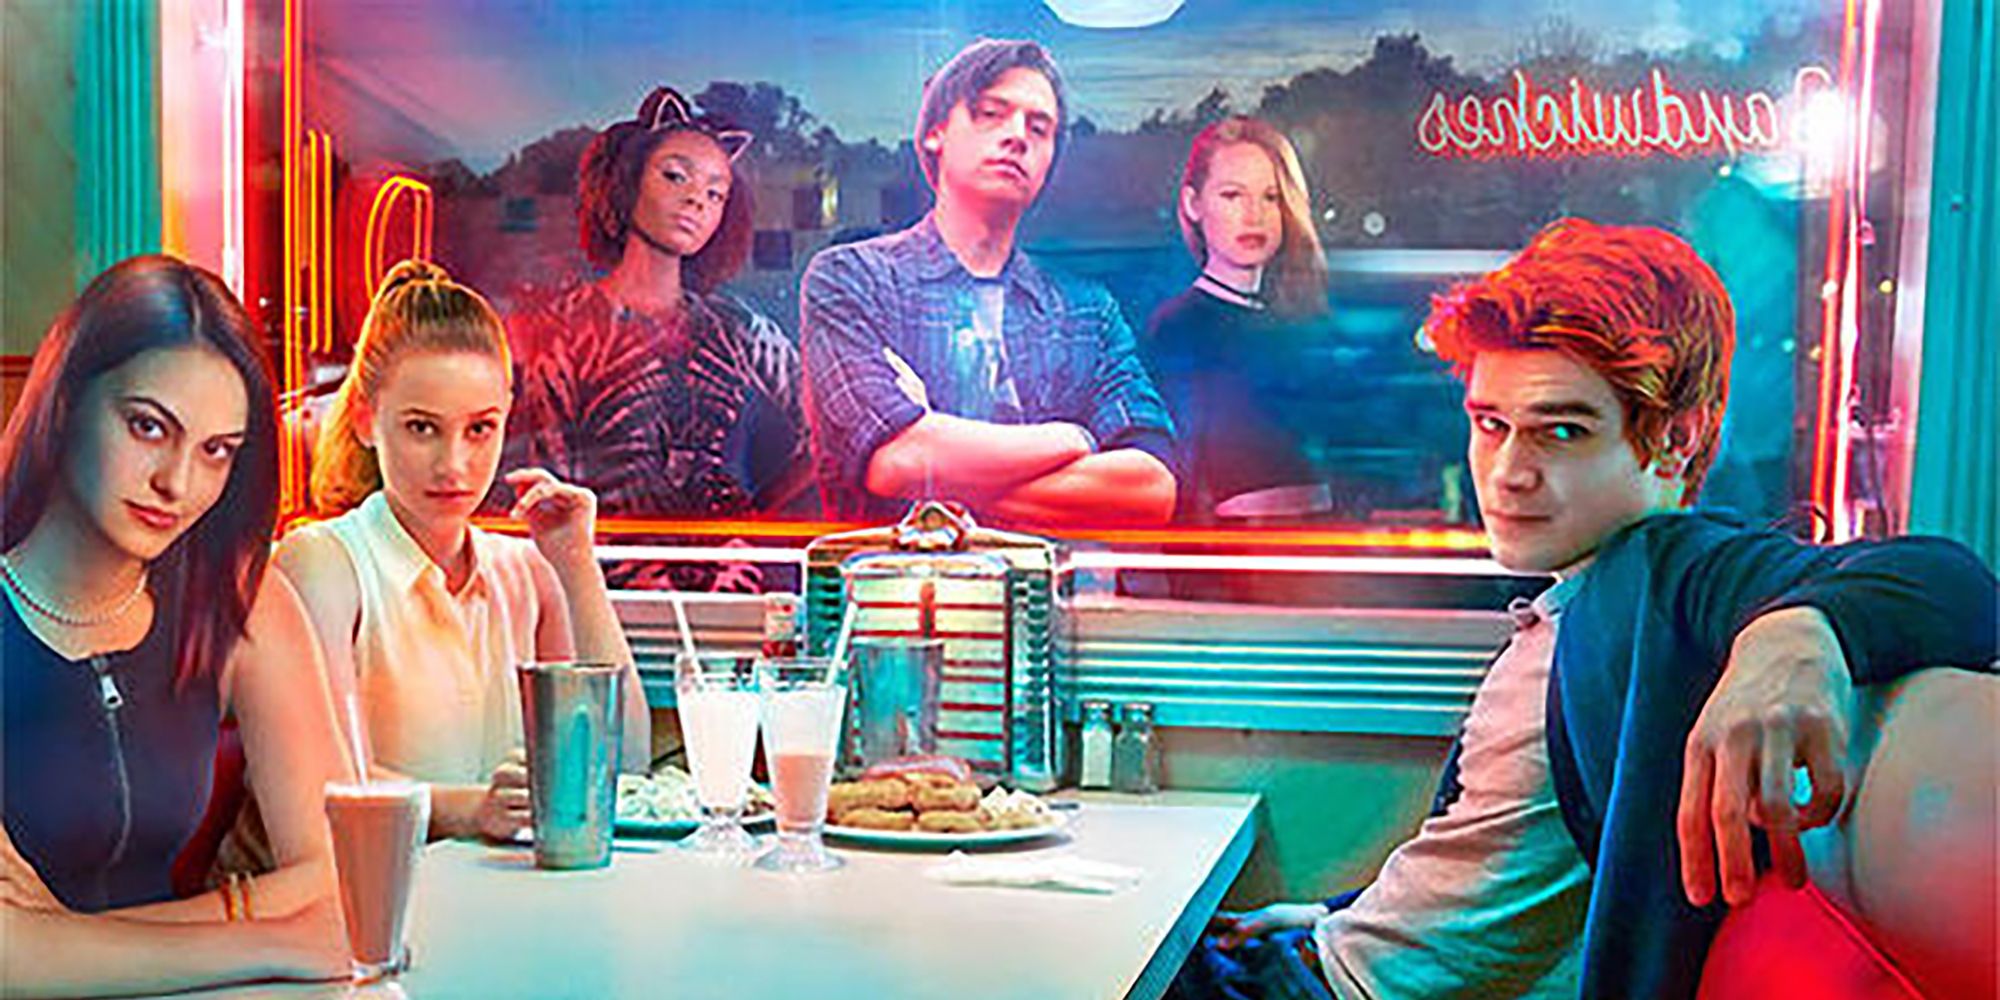 Riverdale Season 1 Poster